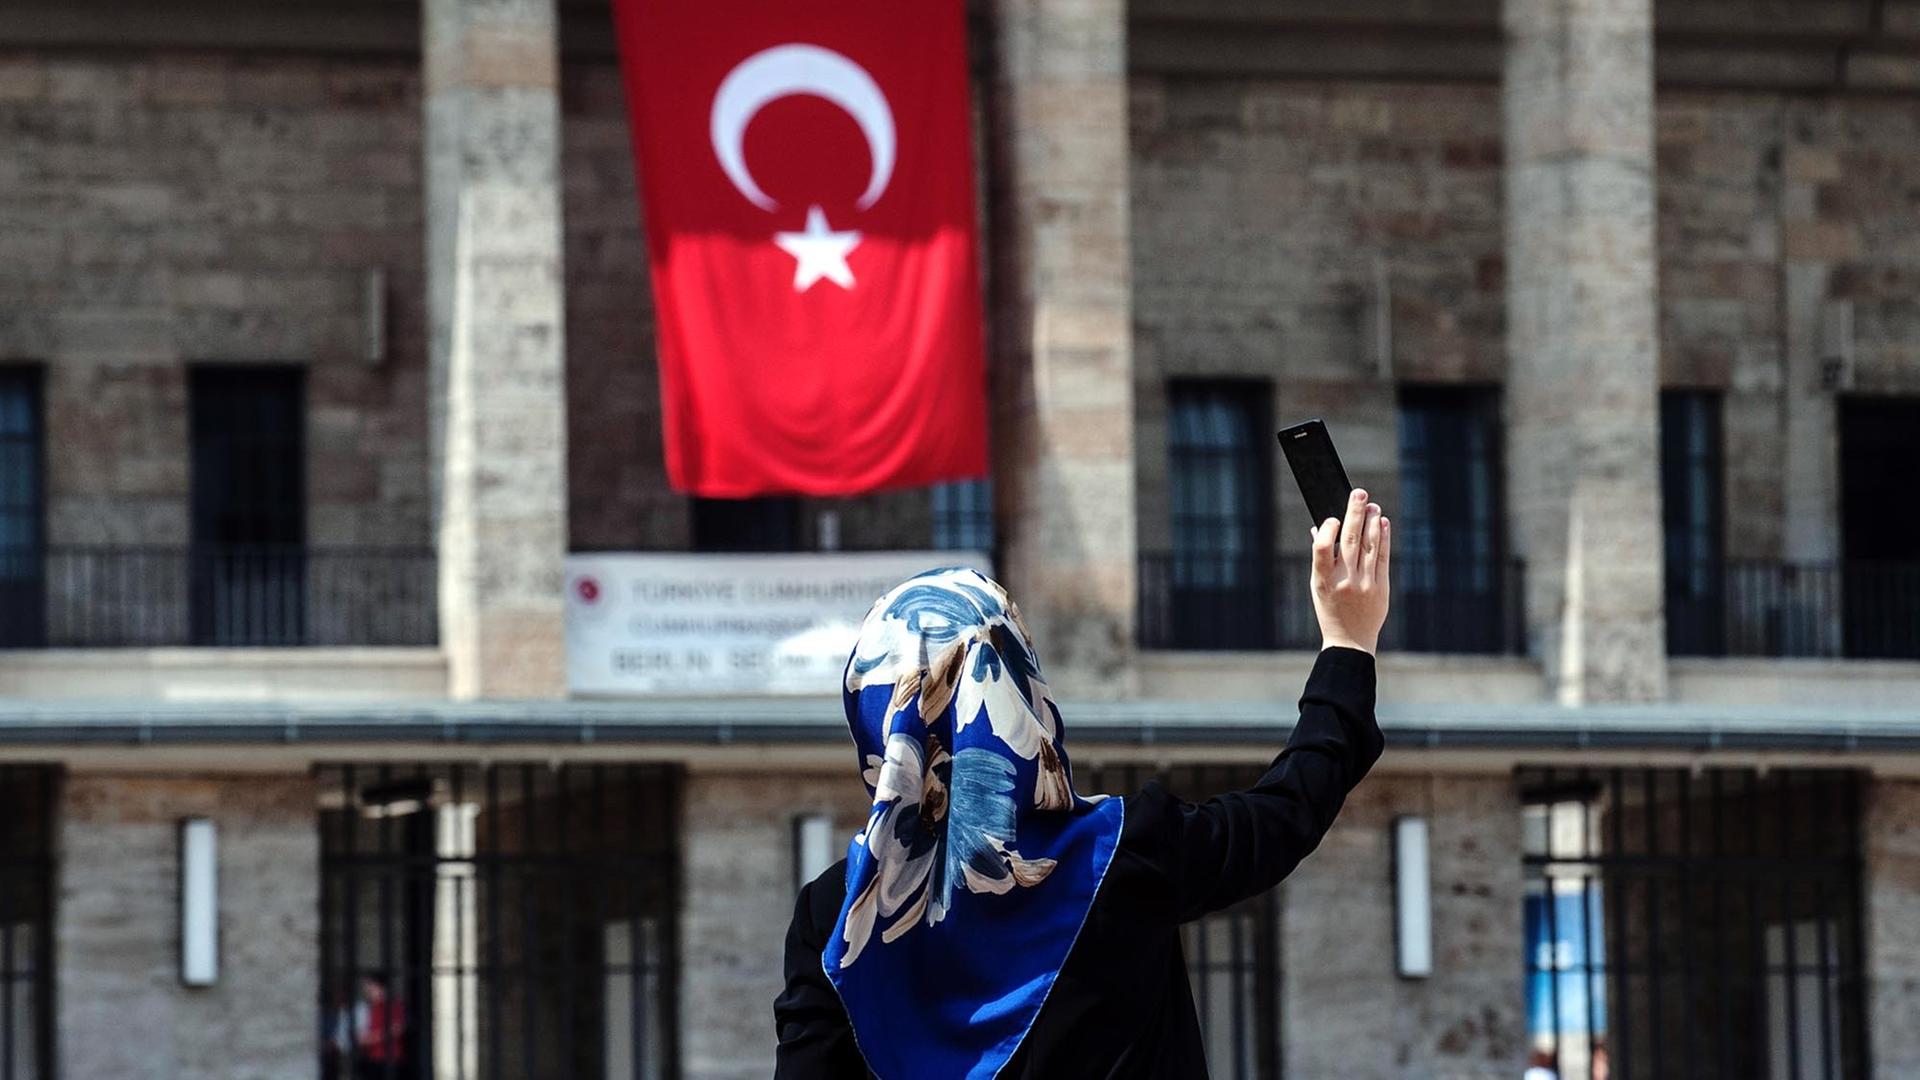 Eine Frau mit Kopftuch fotografiert sich selbst am 03.08.2014 vor dem Olympiastadion in Berlin, an dem eine türkische Fahne hängt. Im Olympiastadion ist ein Wahlzentrum für die türkische Präsidentenwahl in Deutschland. Erstmals können türkische Staatsange